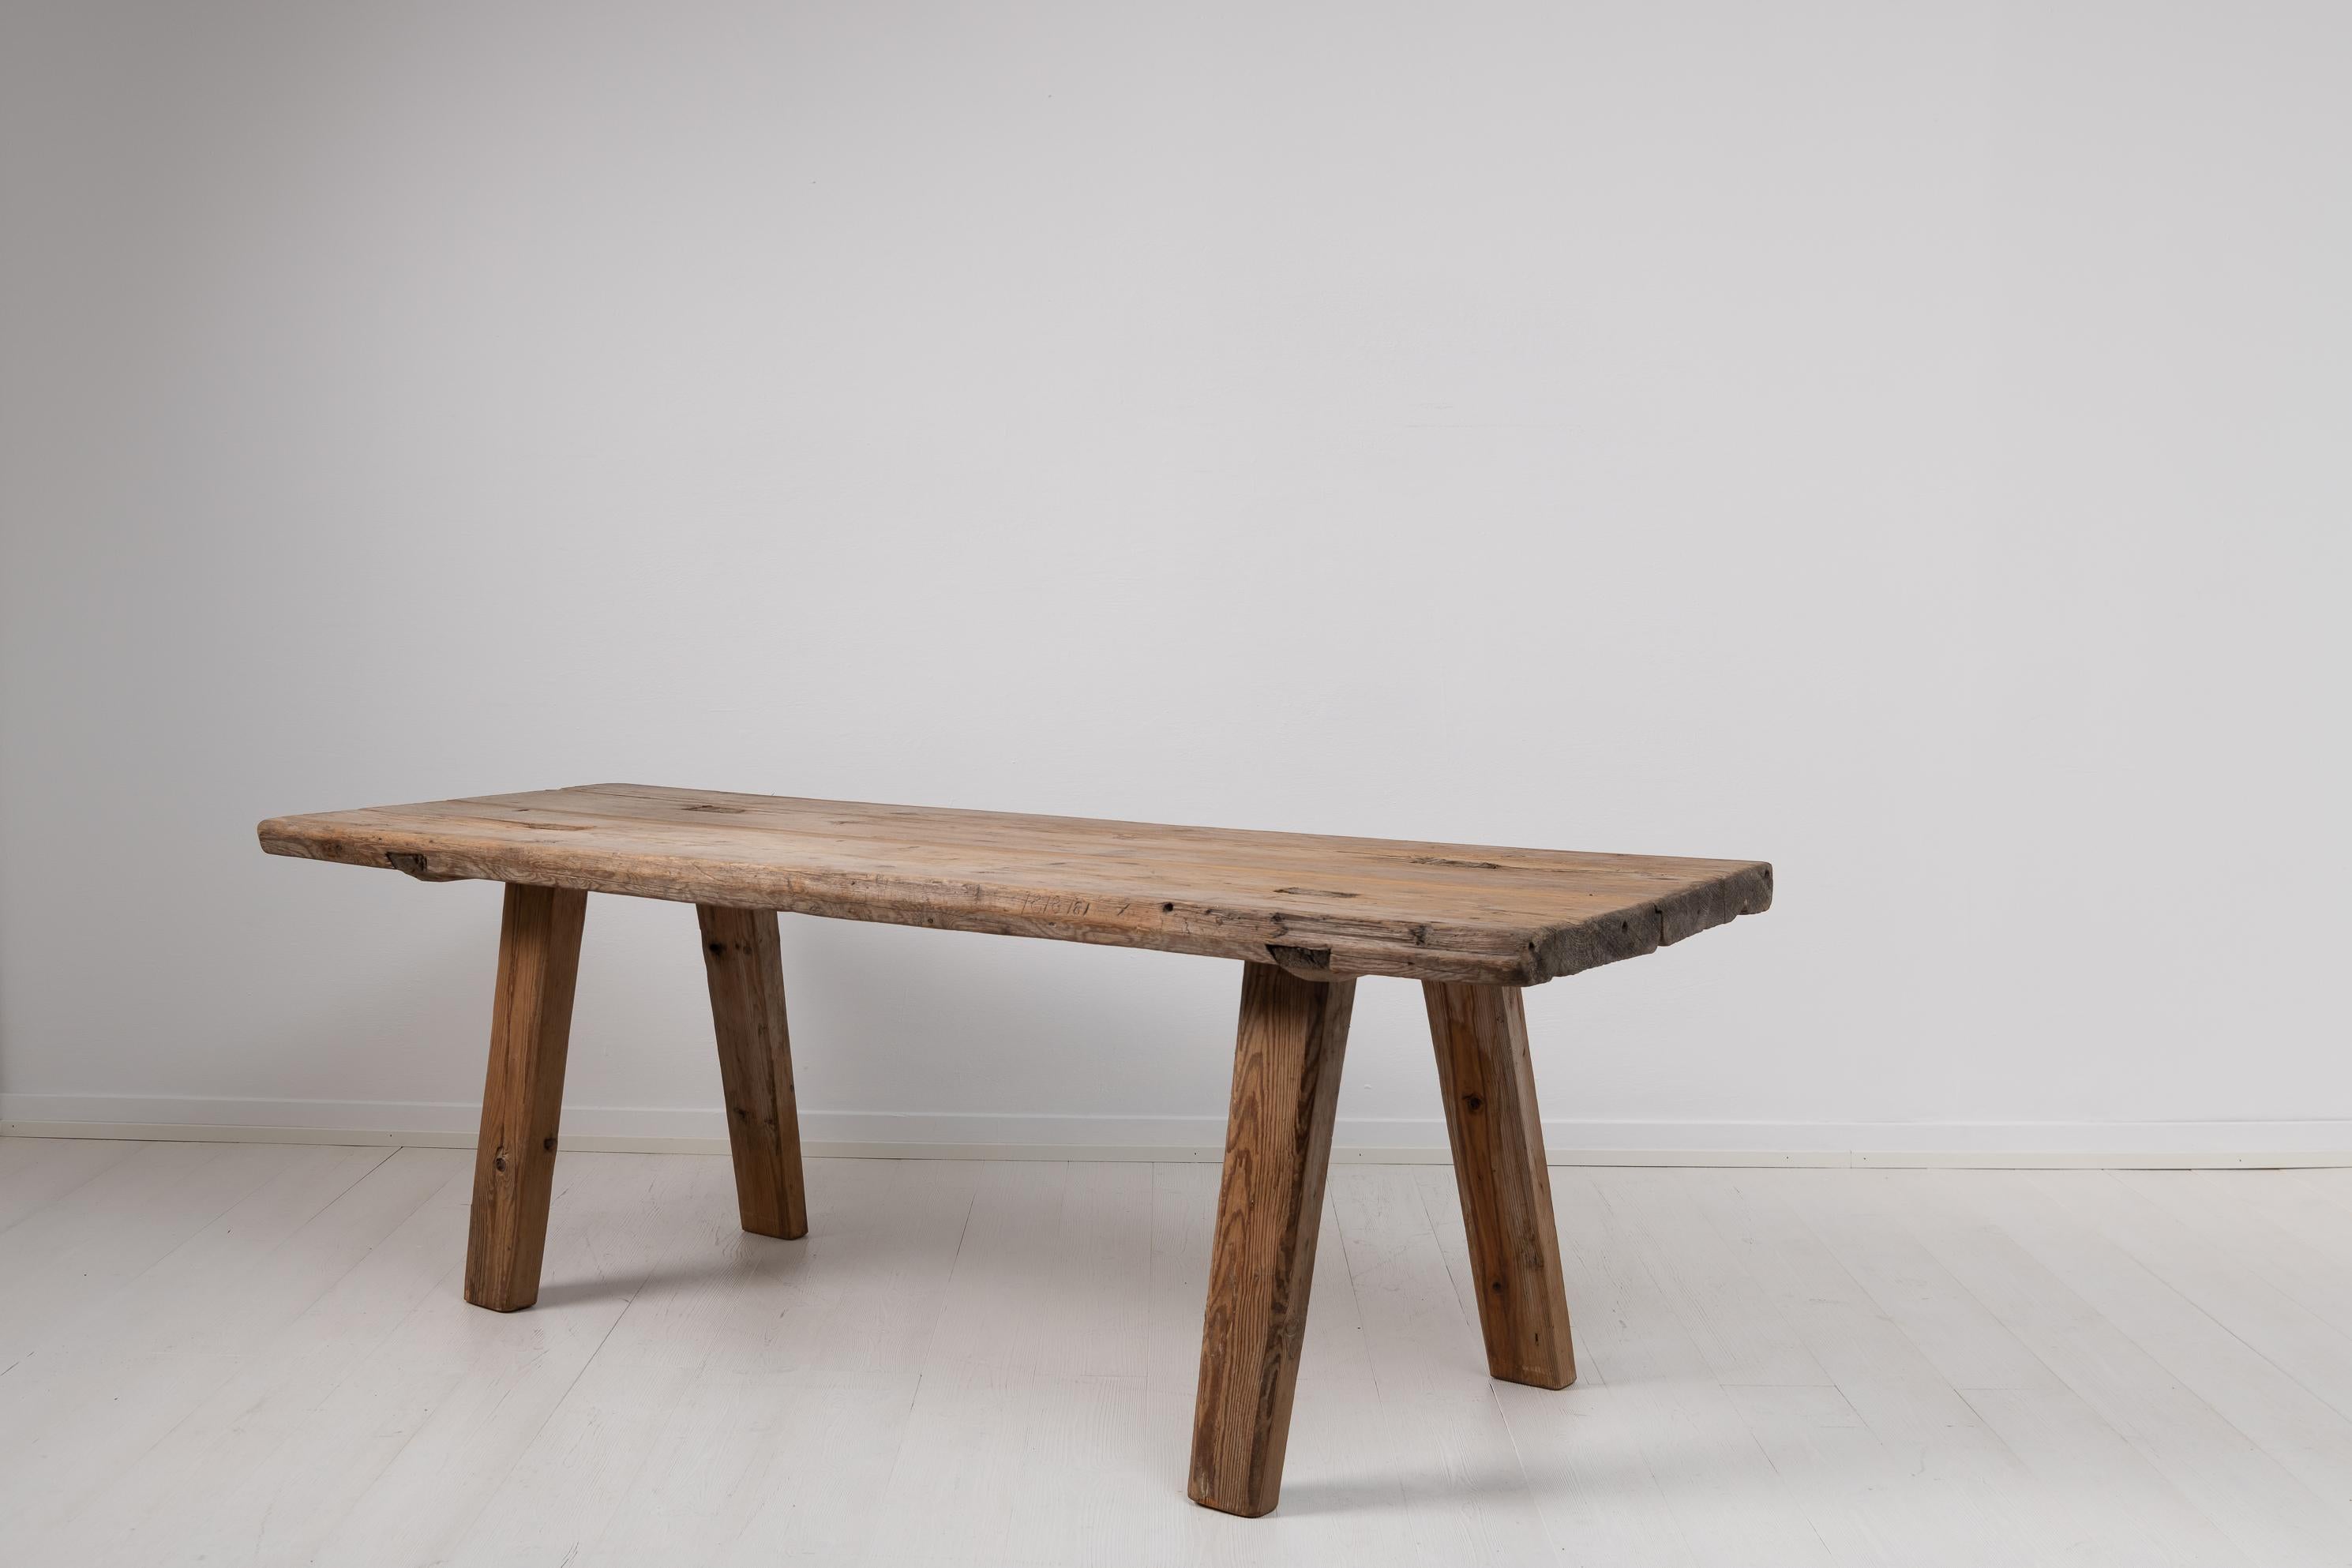 Folk Art Landtisch aus Nordschweden. Der Tisch ist elementar und rustikal und wurde in den späten 1700er Jahren hergestellt. Handgefertigt aus massivem Kiefernholz und nie lackiert. Die blanke Oberfläche des Holzes ist gealtert und hat eine